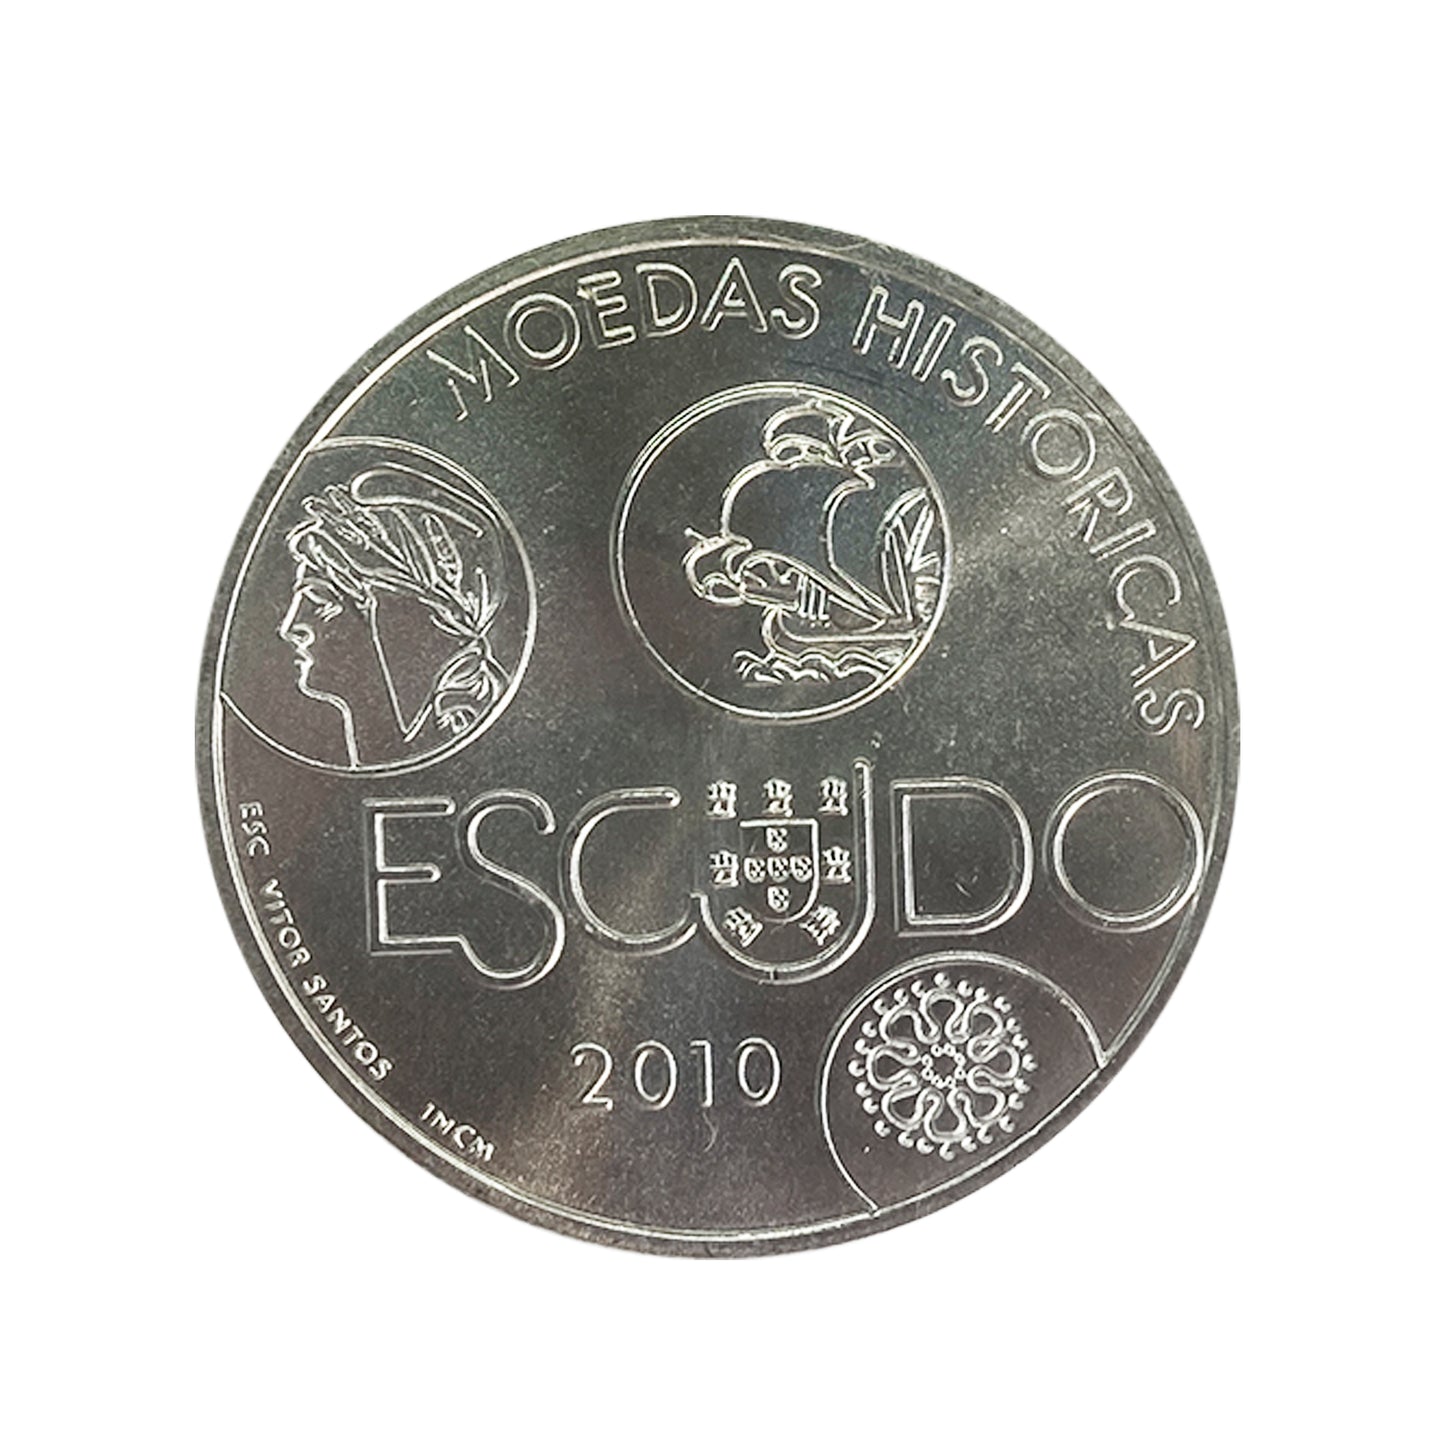 Portugal - Moneda 10 euros en plata 2010 - Iberoamérica: Escudo